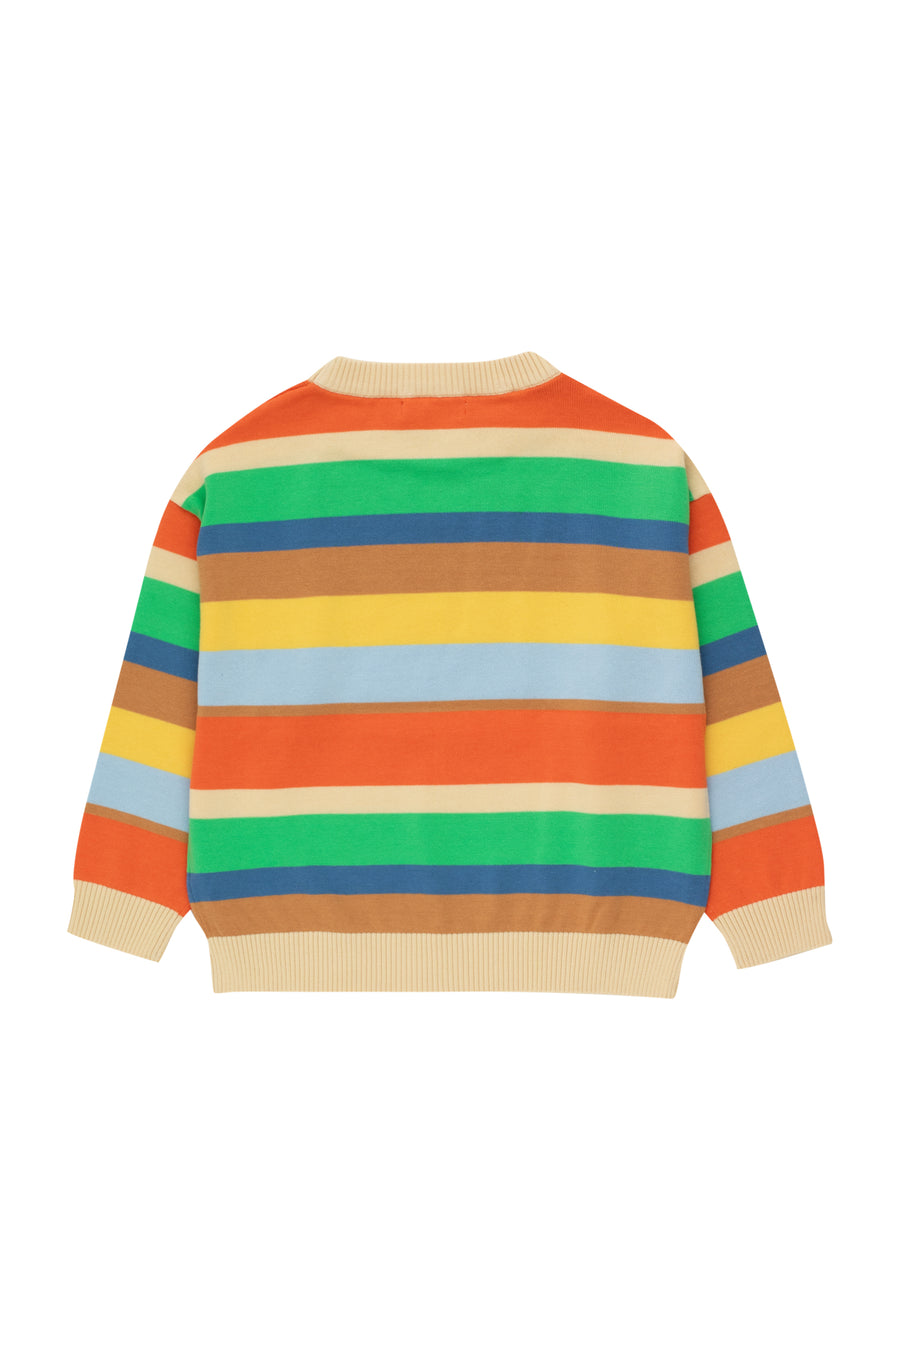 Retro Stripes Sweater | Multi